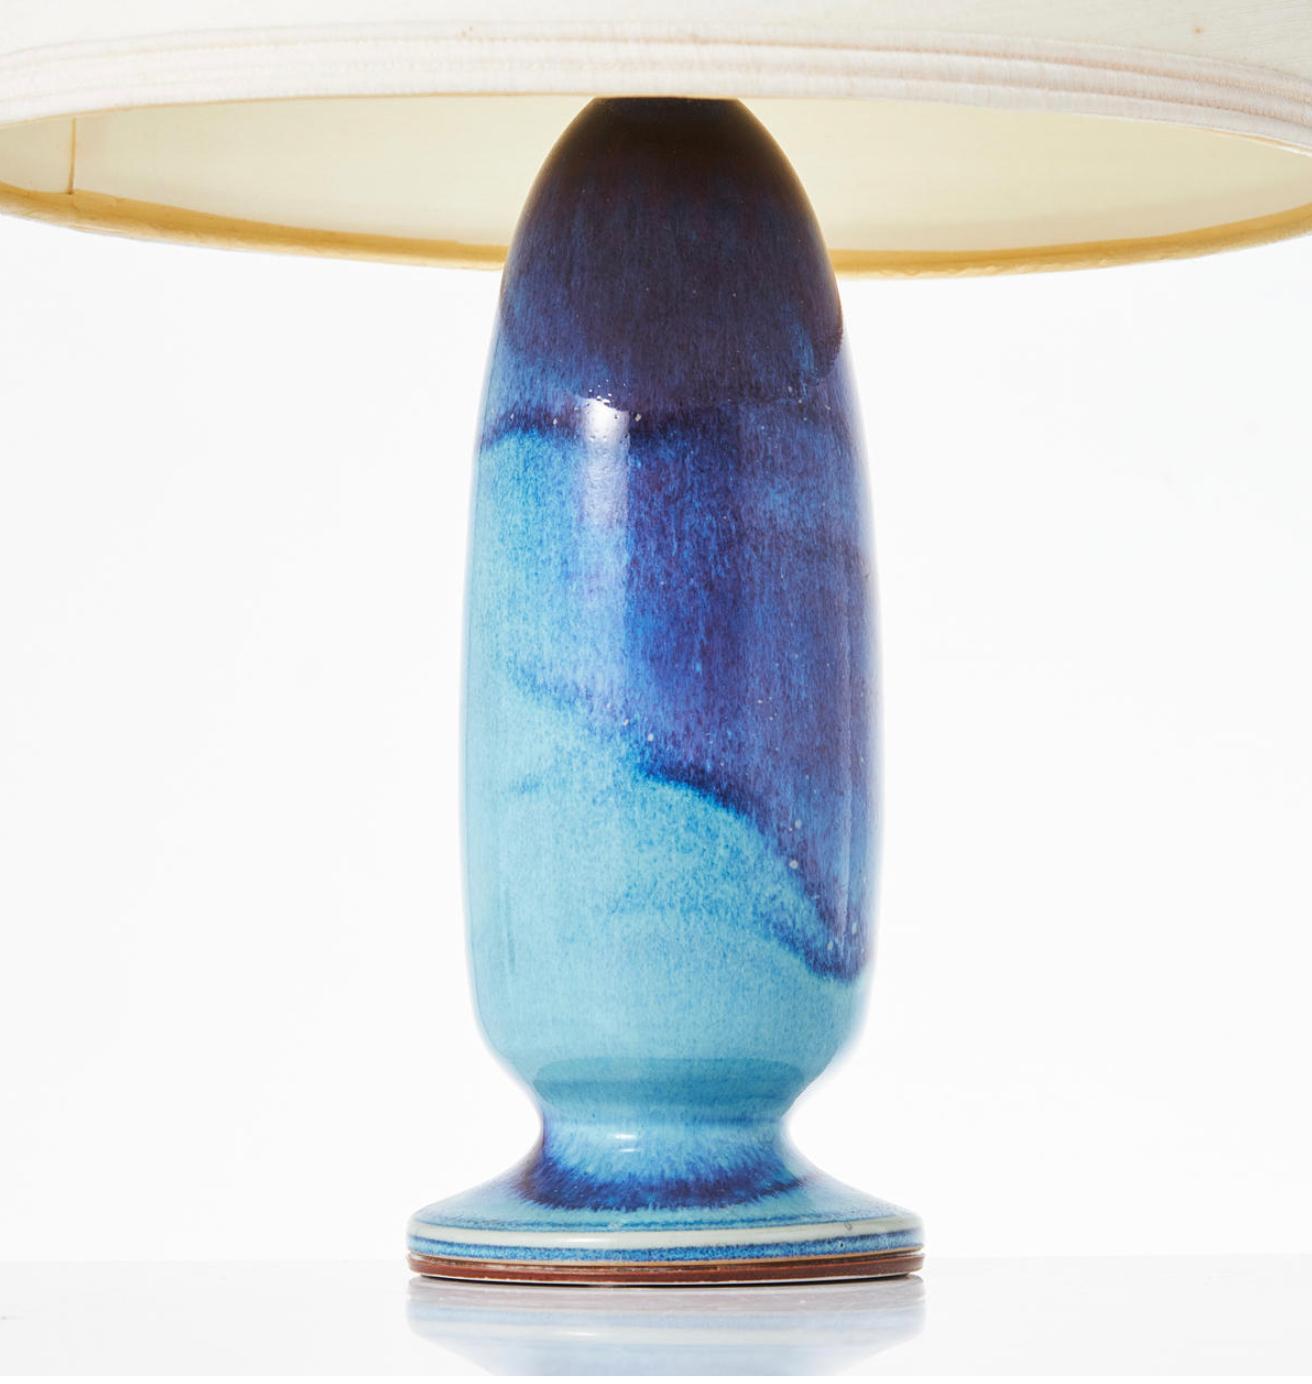 Lampe de table en grès de Berndt Friberg.
Aniaga émaillé dans des tons turquoise/bleu, signé Friberg de la main de l'atelier, daté de 1974. Hauteur totale 19